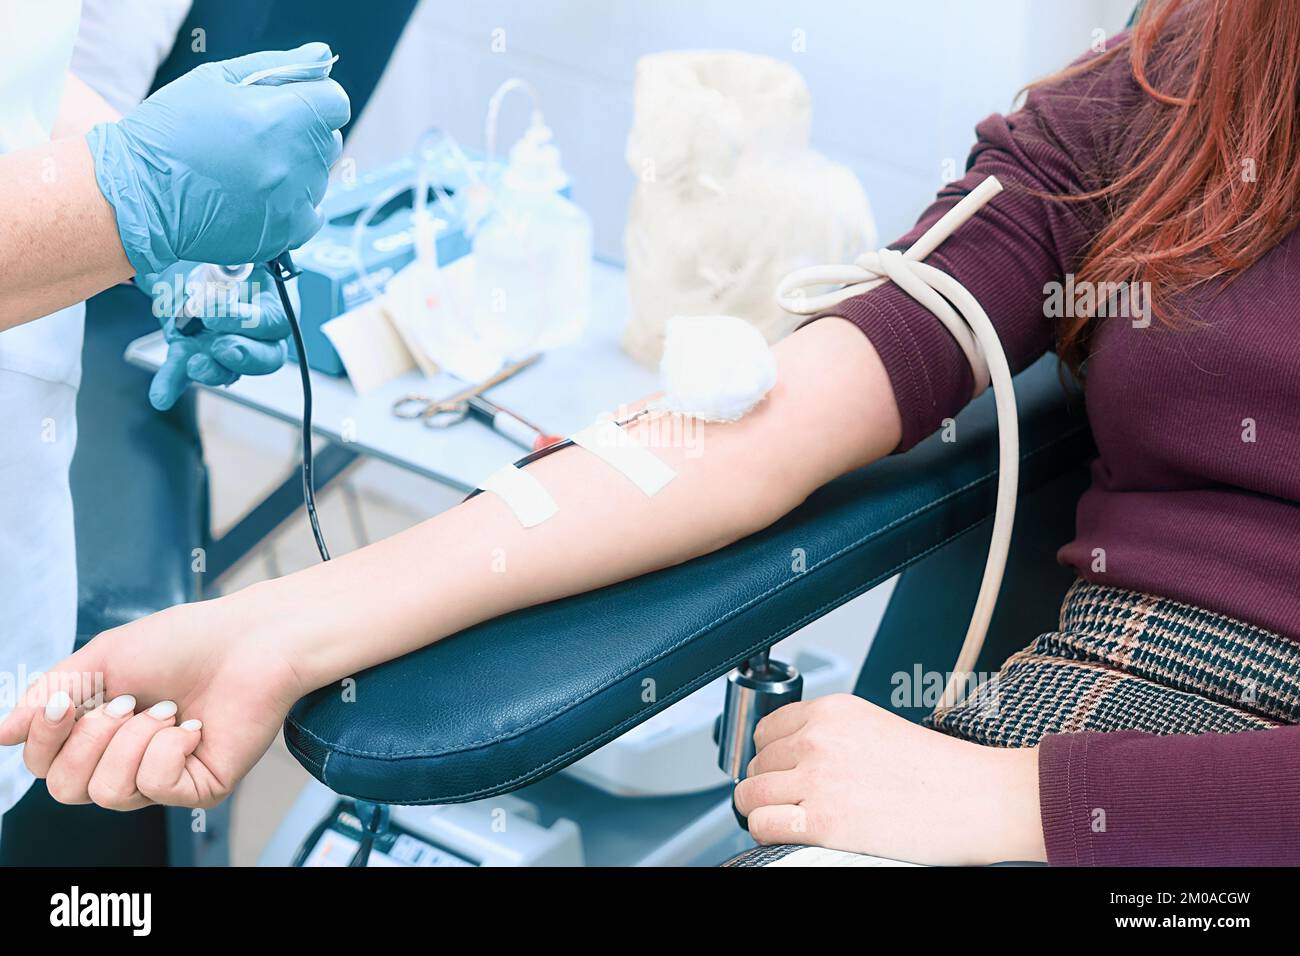 L'operatore sanitario prende sangue dalla vena della donna. Tema della donazione. Donna donatrice seduta su sedia medica. Mano femmina con contagocce per primo piano. Foto Stock